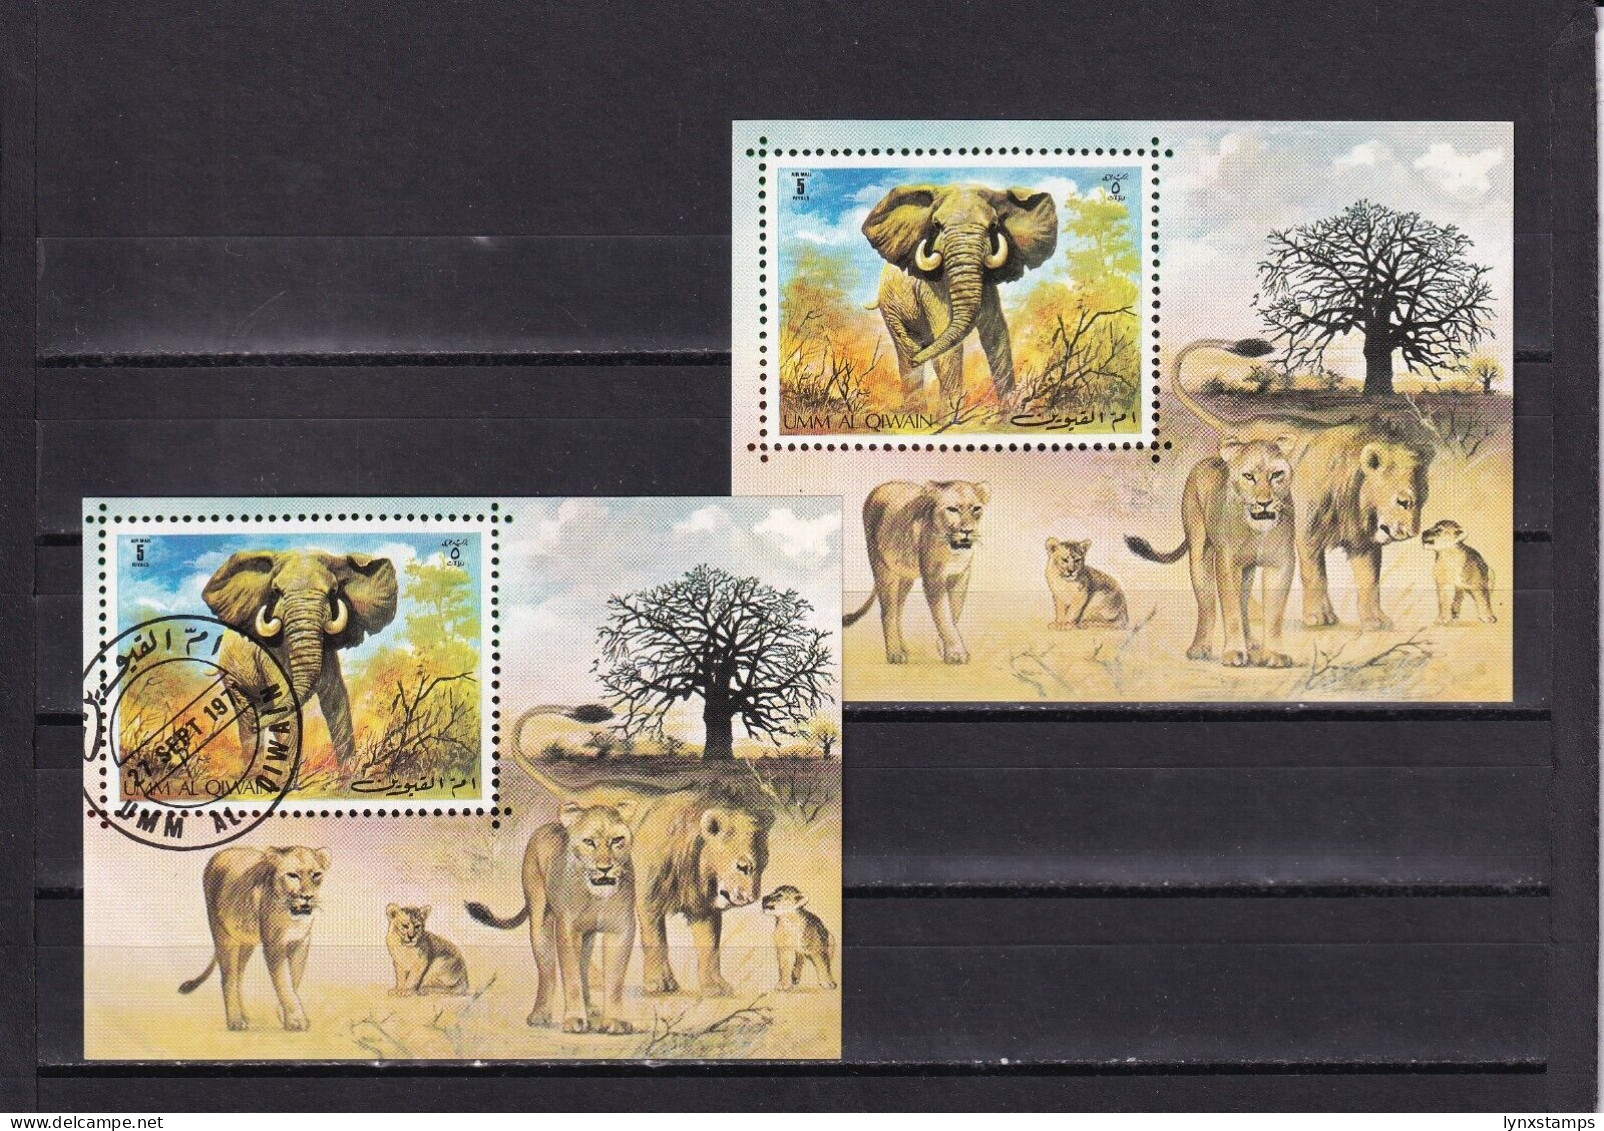 SA03 Umm Al Qiwain UAE 1971 Minisheet With Elephants Used And Mint - Eléphants